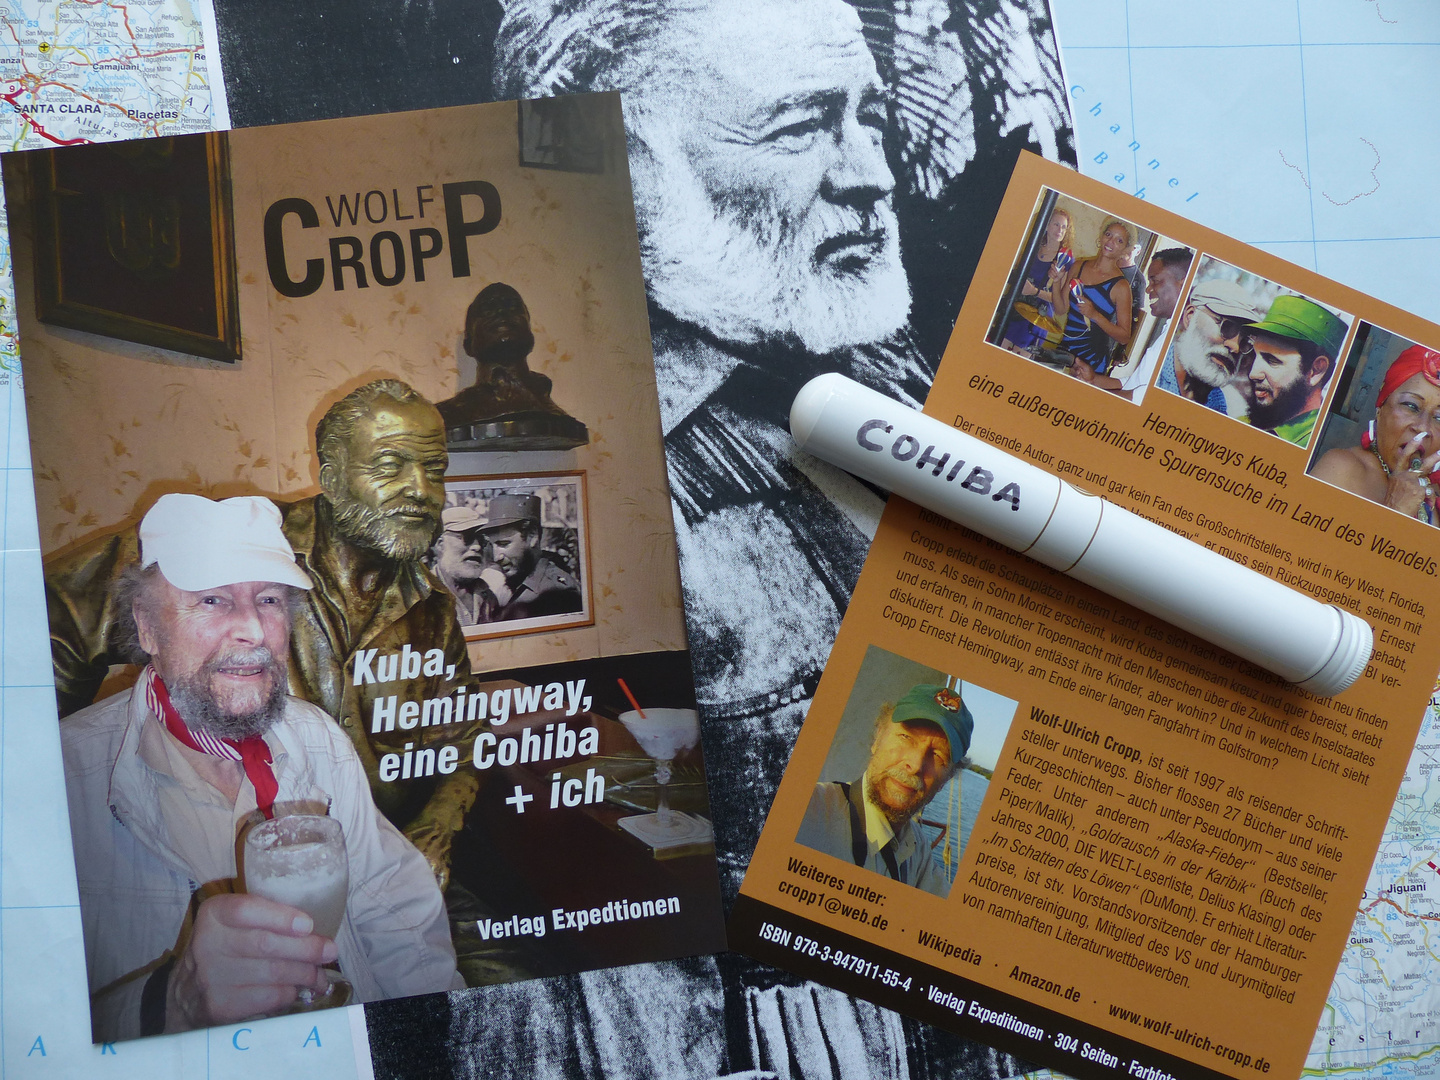 Kuba, Hemingway, eine Cohiba + ich